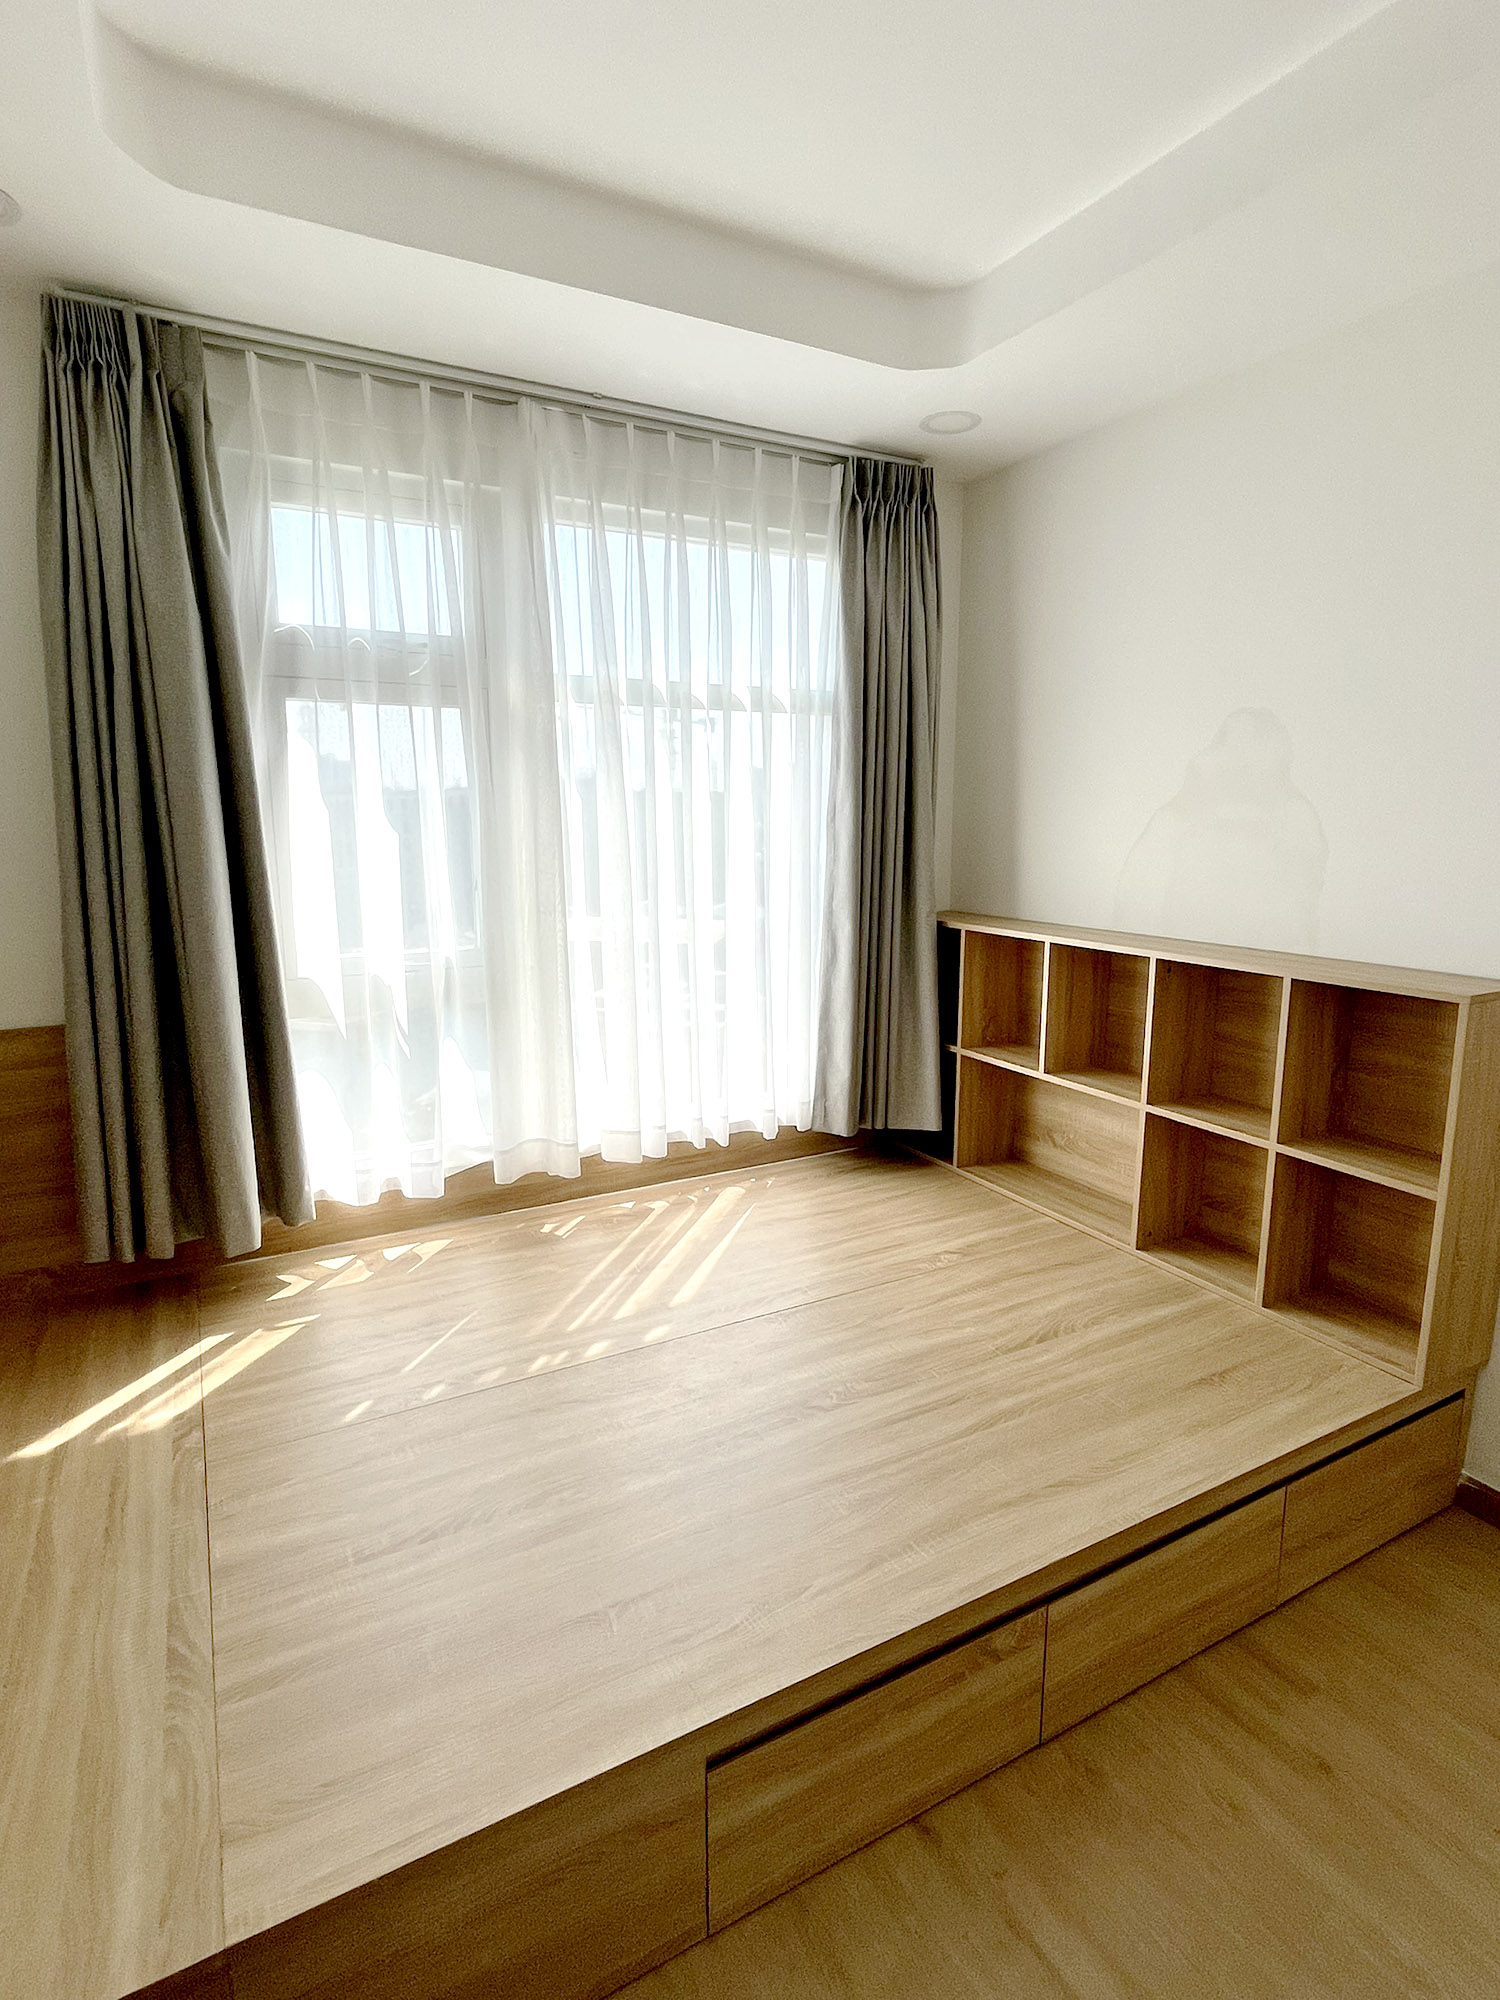 Hoàn thiện nội thất phòng ngủ tầng 2 Nhà phố Đồng Nai phong cách Bắc Âu Scandinavian